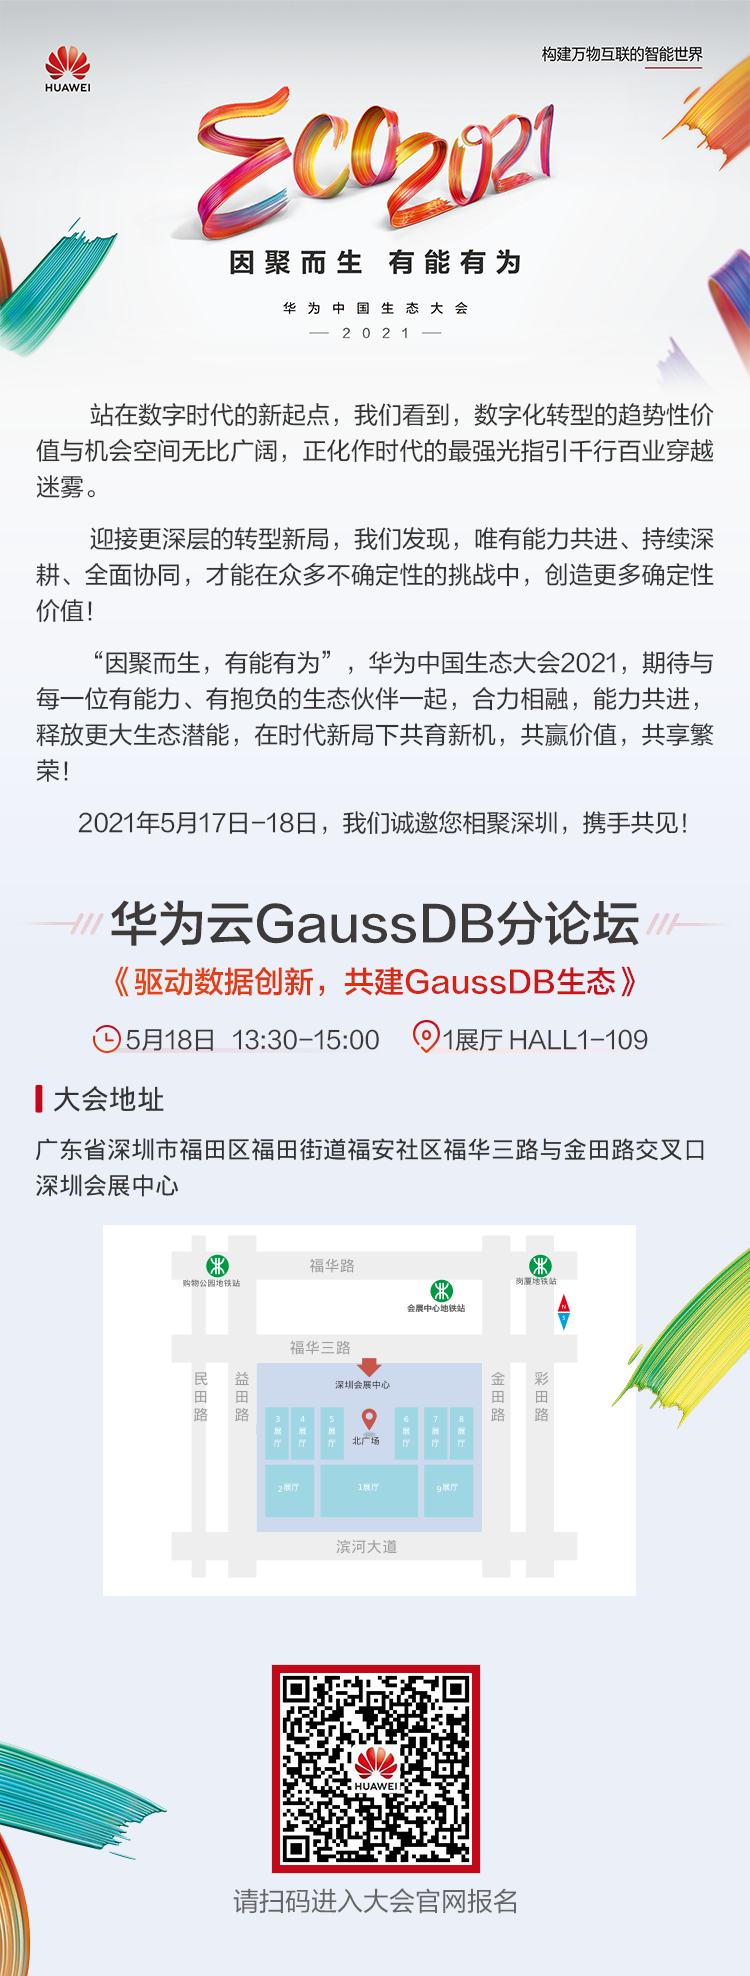 华为中国生态大会2021举行在即，华为云GaussDB将重磅发布5大解决方案